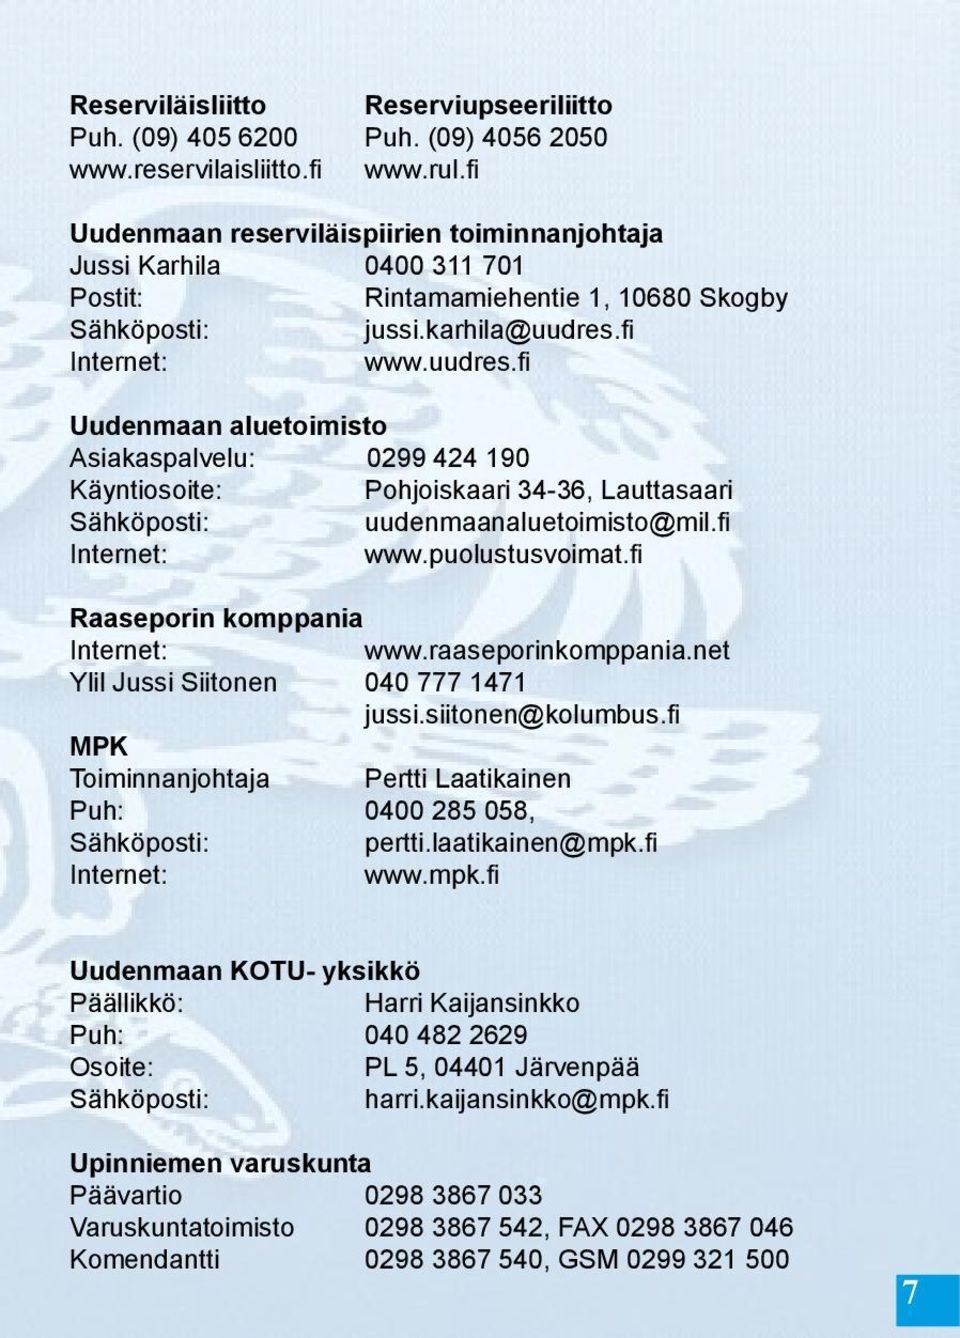 fi Internet: www.uudres.fi Uudenmaan aluetoimisto Asiakaspalvelu: 0299 424 190 Käyntiosoite: Pohjoiskaari 34-36, Lauttasaari Sähköposti: uudenmaanaluetoimisto@mil.fi Internet: www.puolustusvoimat.